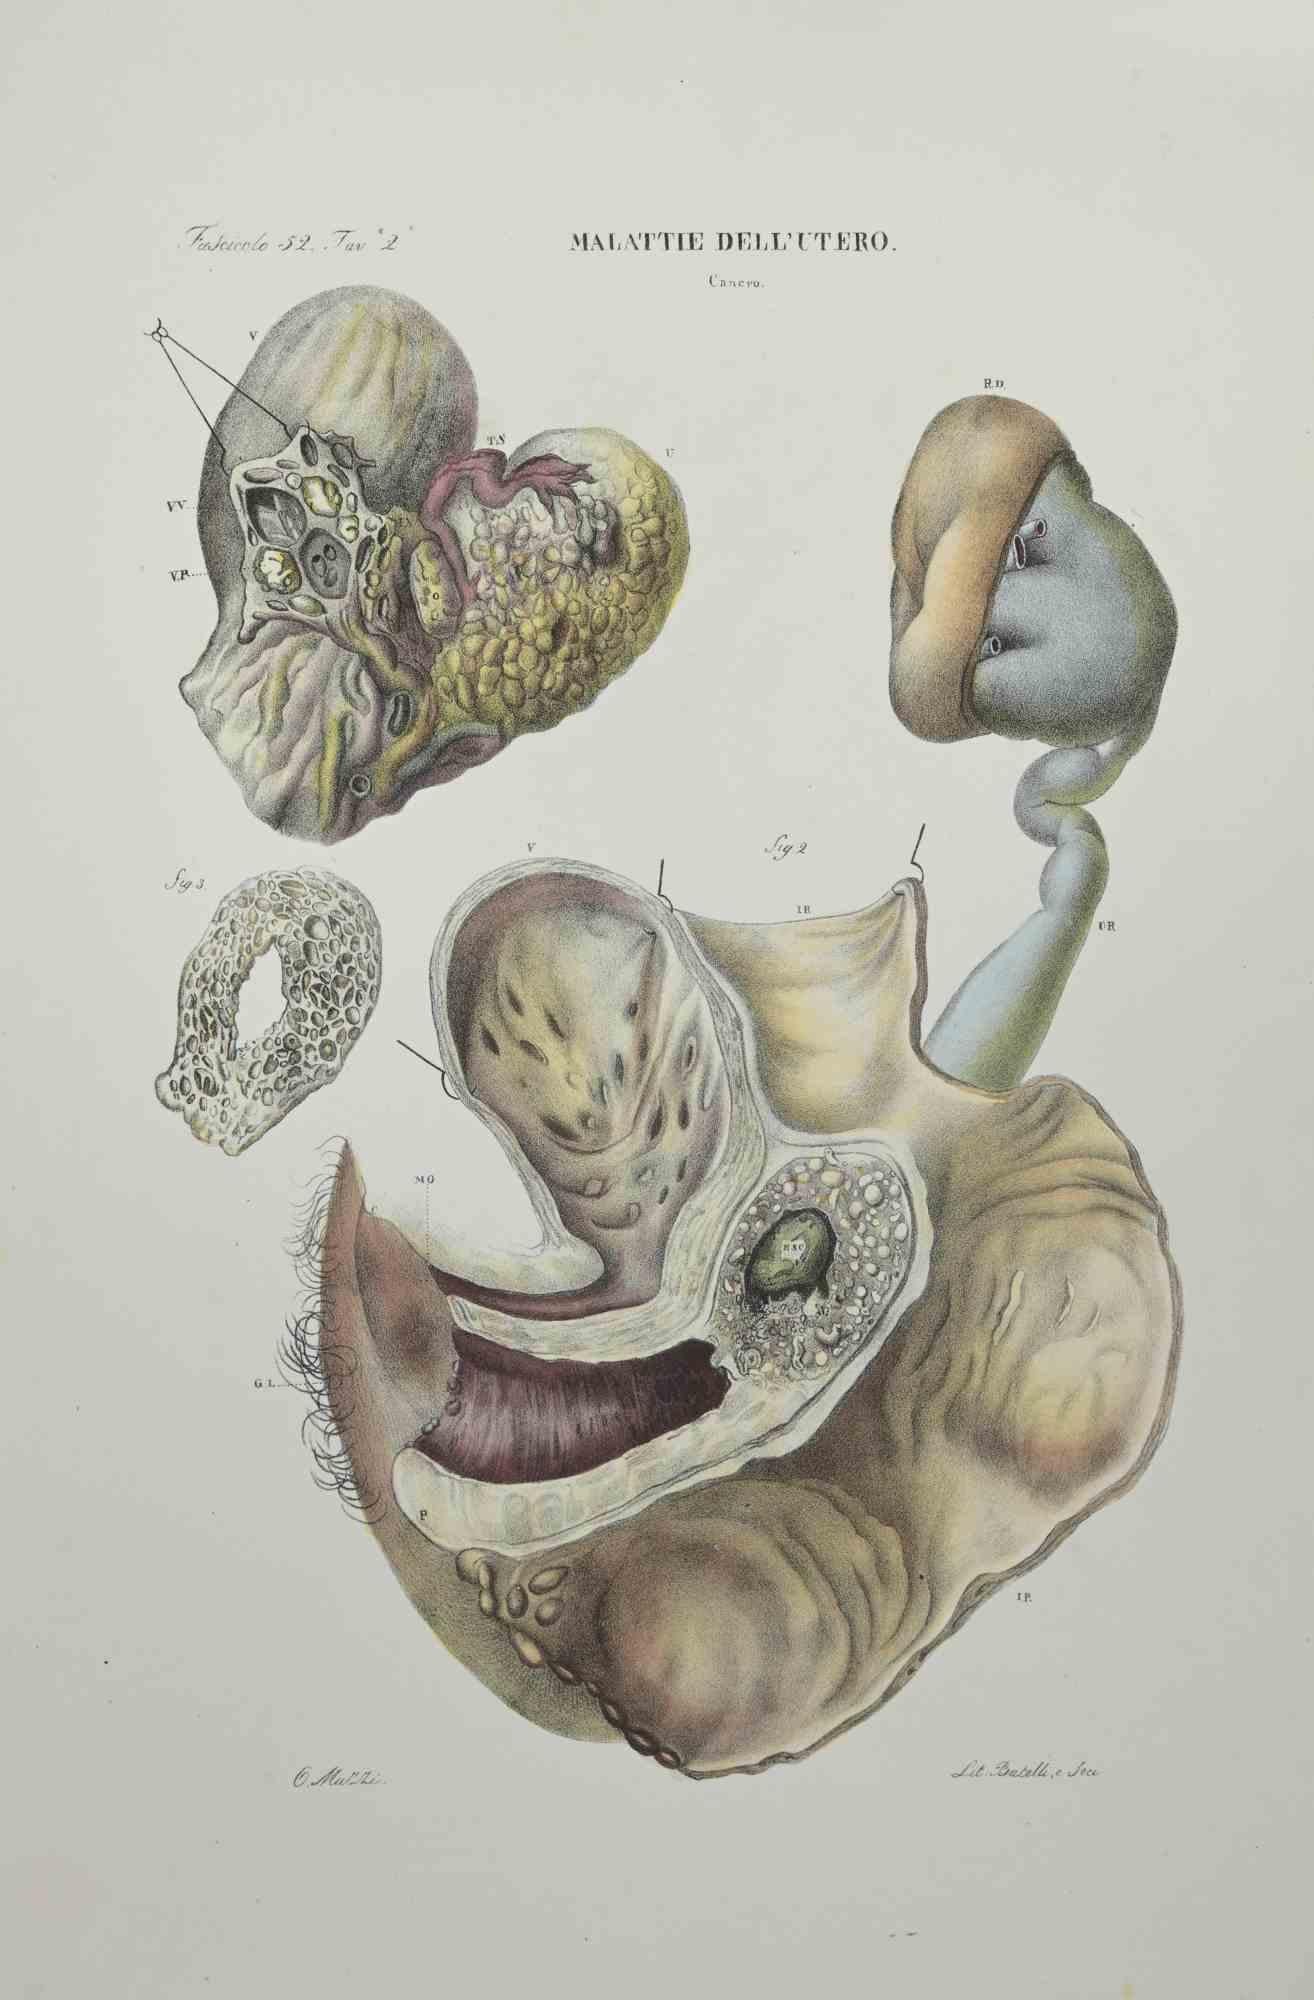 Maladies de l'utérus est une lithographie coloriée à la main par Ottavio Muzzi pour l'édition d'Antoine Chazal, Anatomie humaine, Imprimeurs Batelli et Ridolfi, 1843.

L'ouvrage fait partie de l'Atlante generale della anatomia patologica del corpo